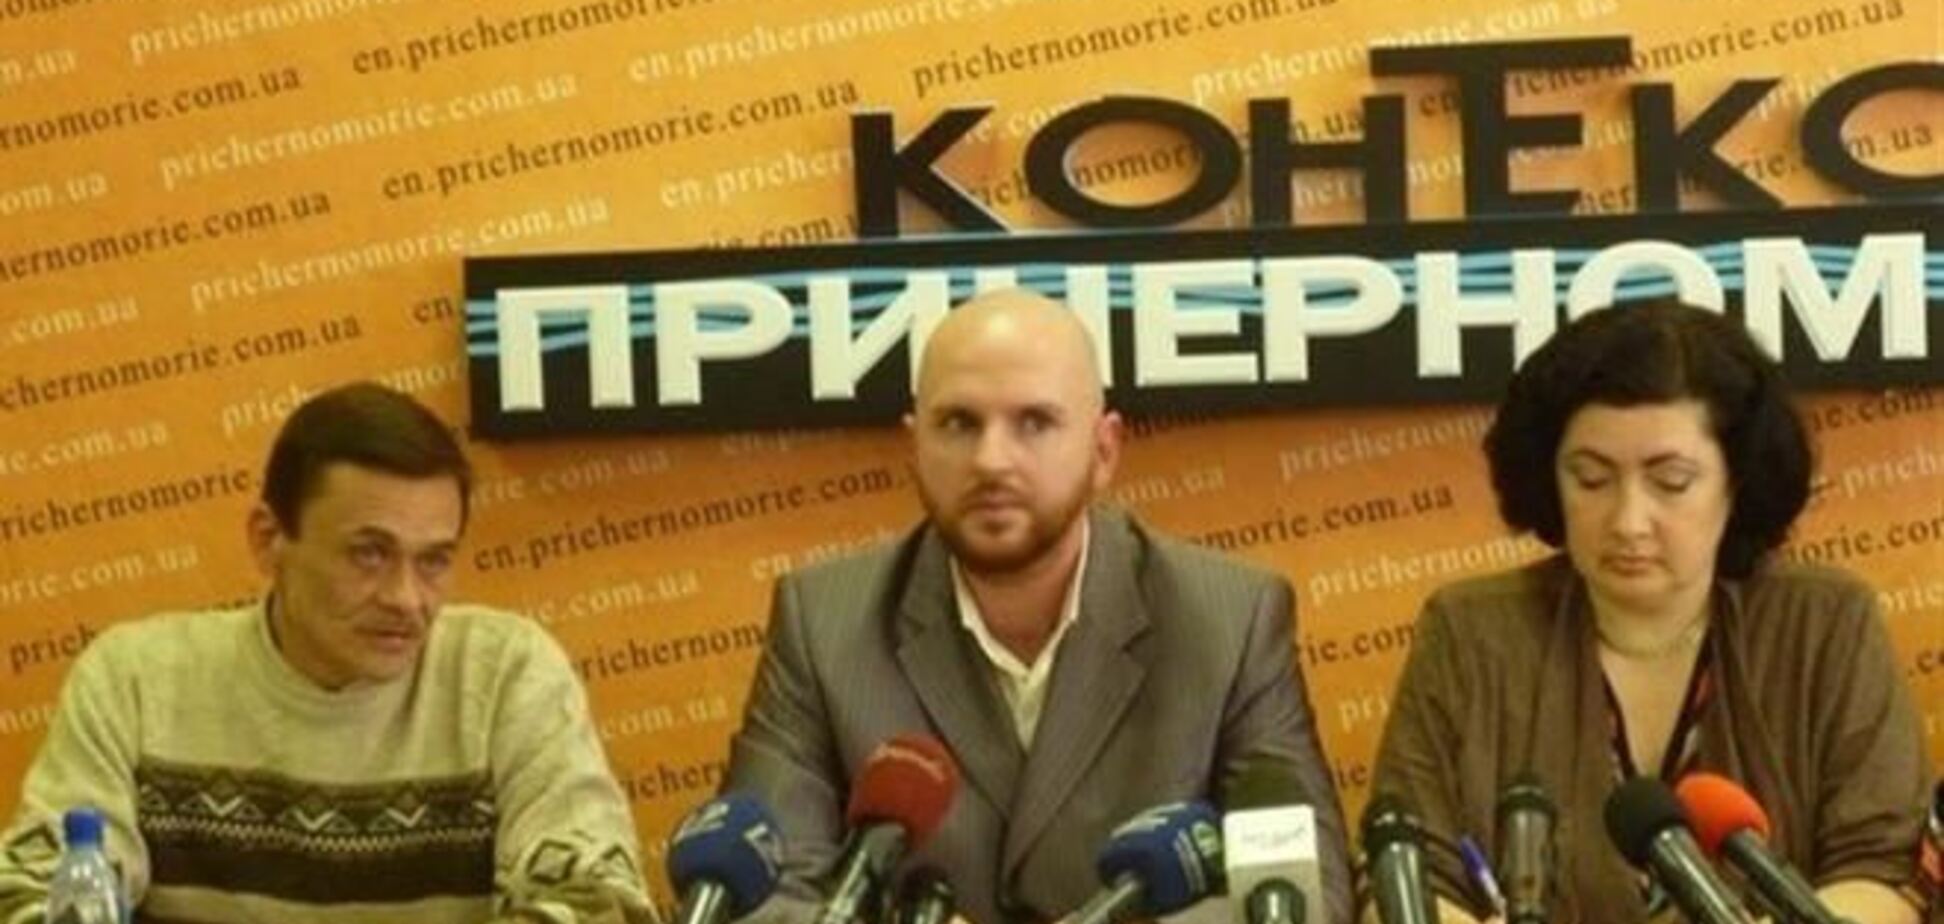 ГП 'Майдан' объявляет о начале акции 'Требуйте невозможного'